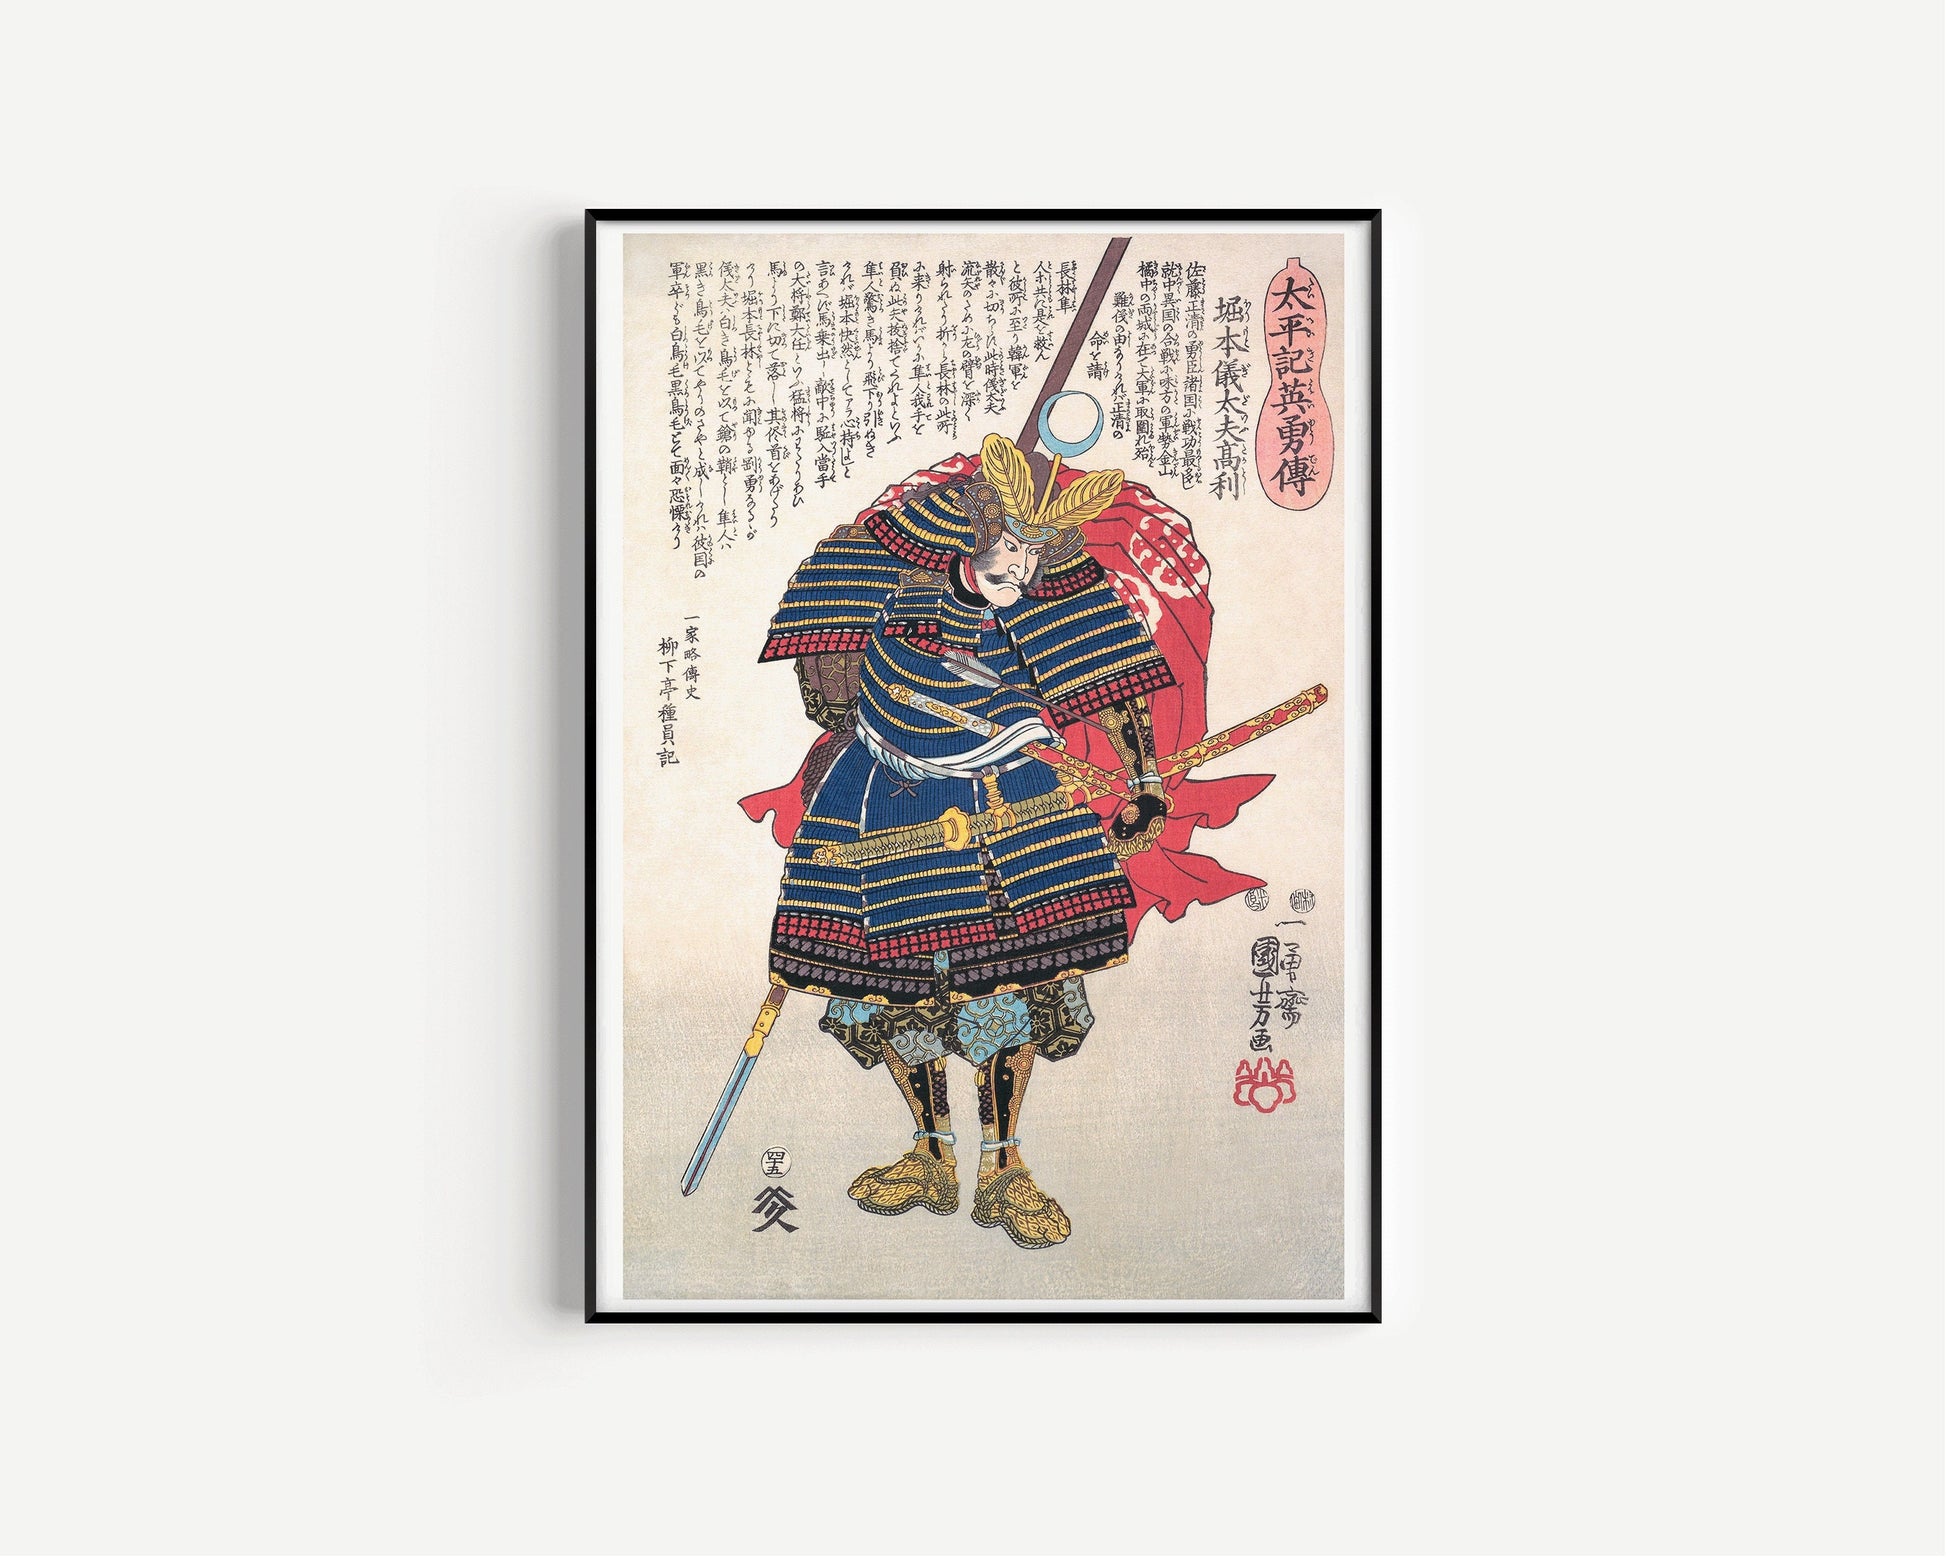 Kuniyoshi - The Samurai